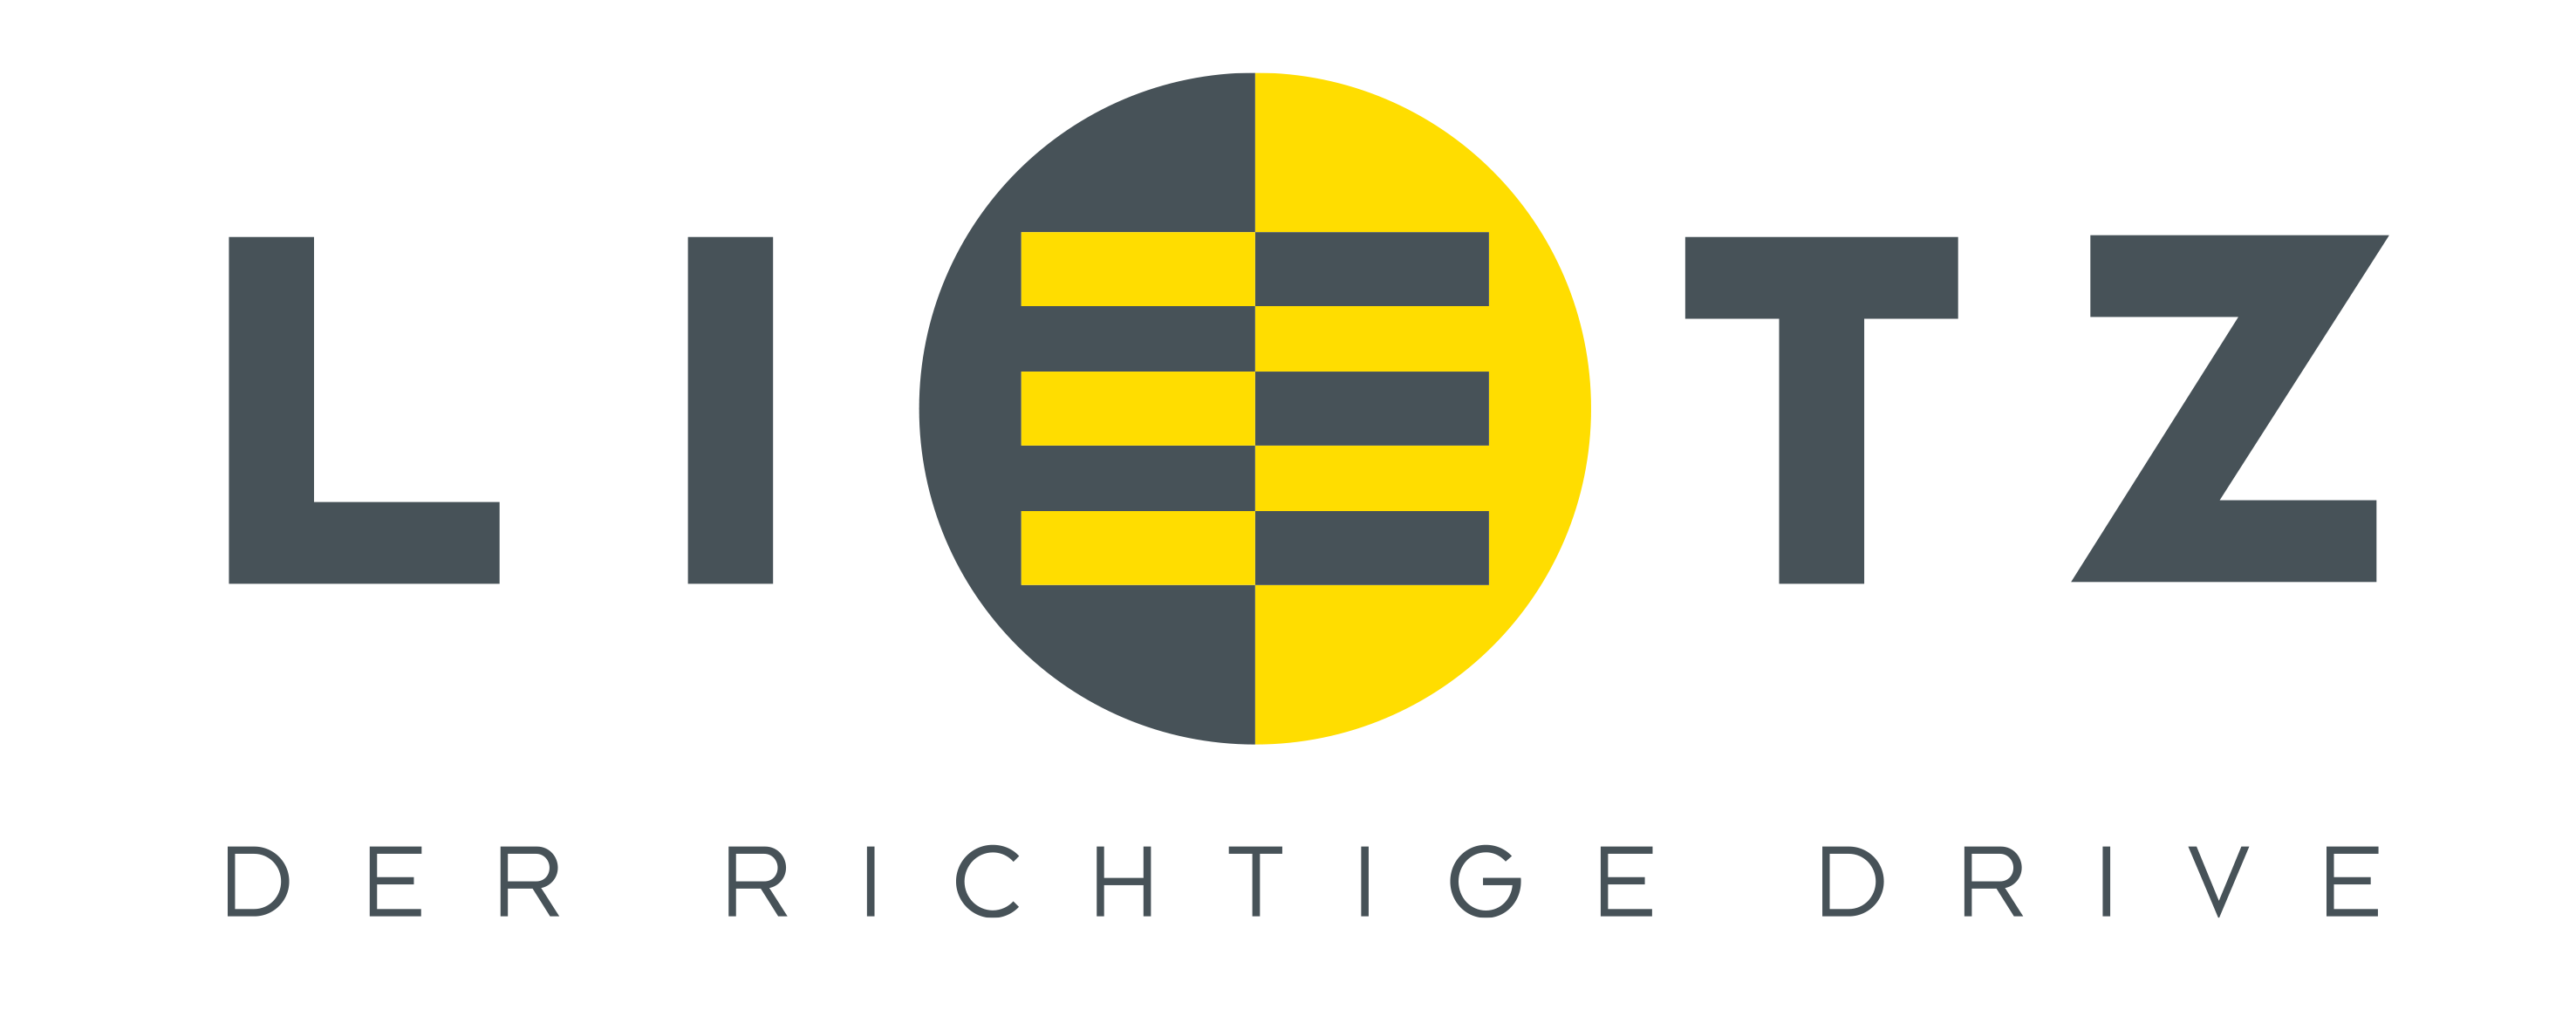 Lietz Logo